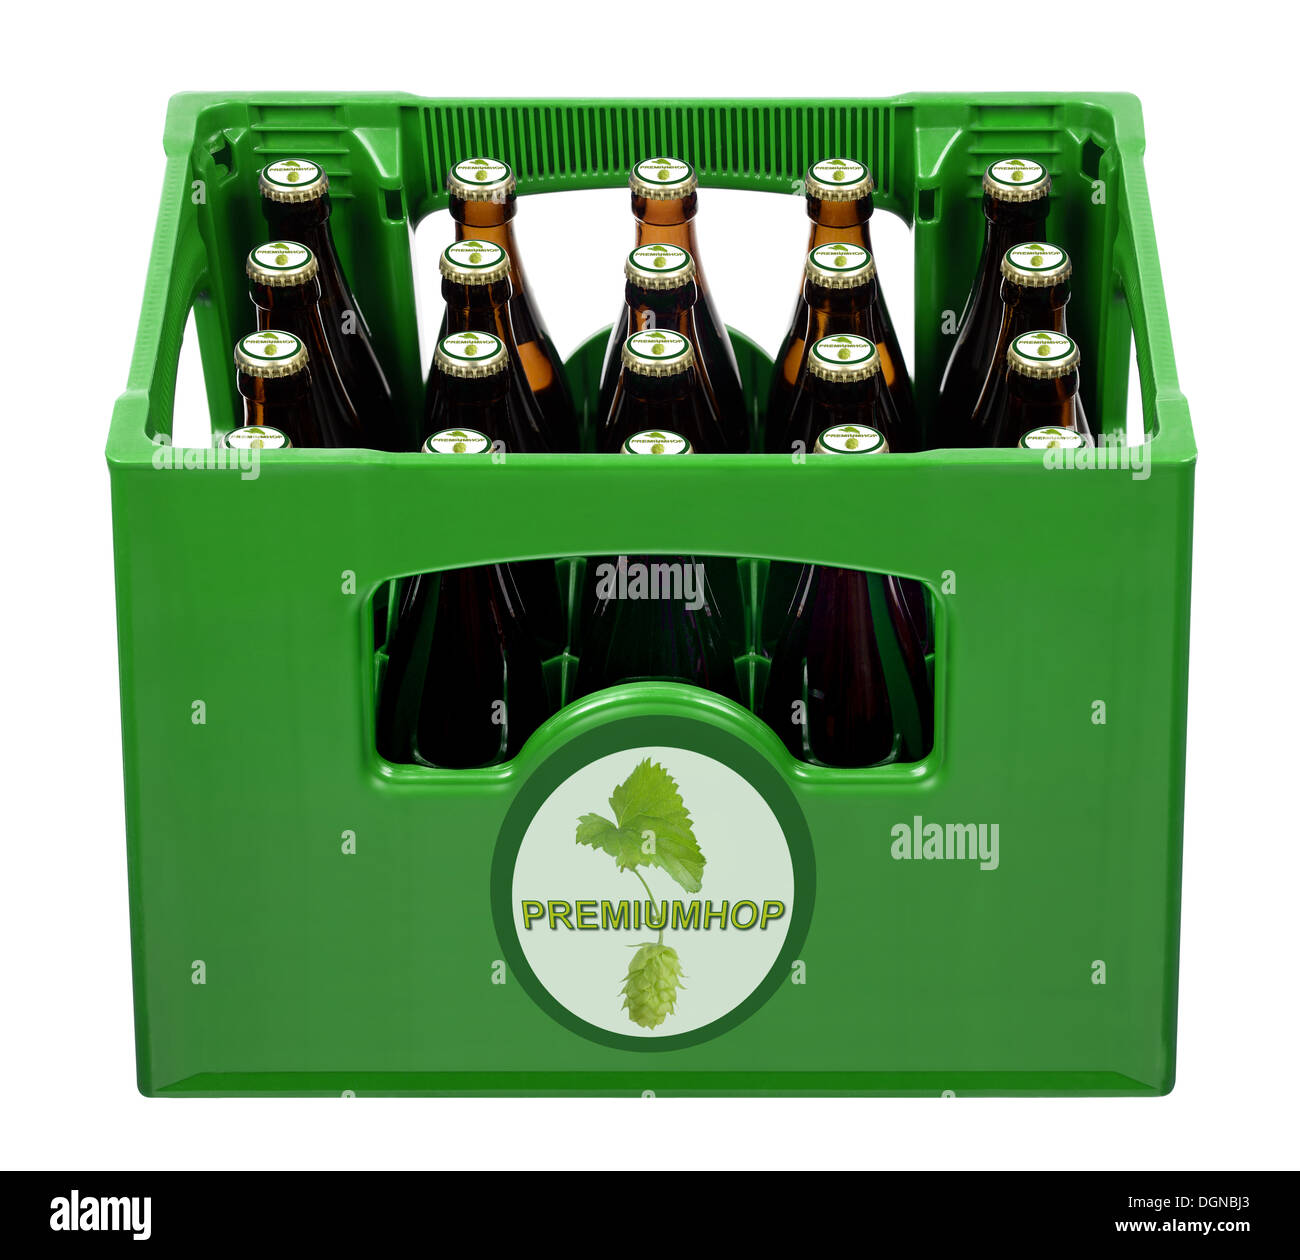 Beer bottles in beer crate Stock Photo